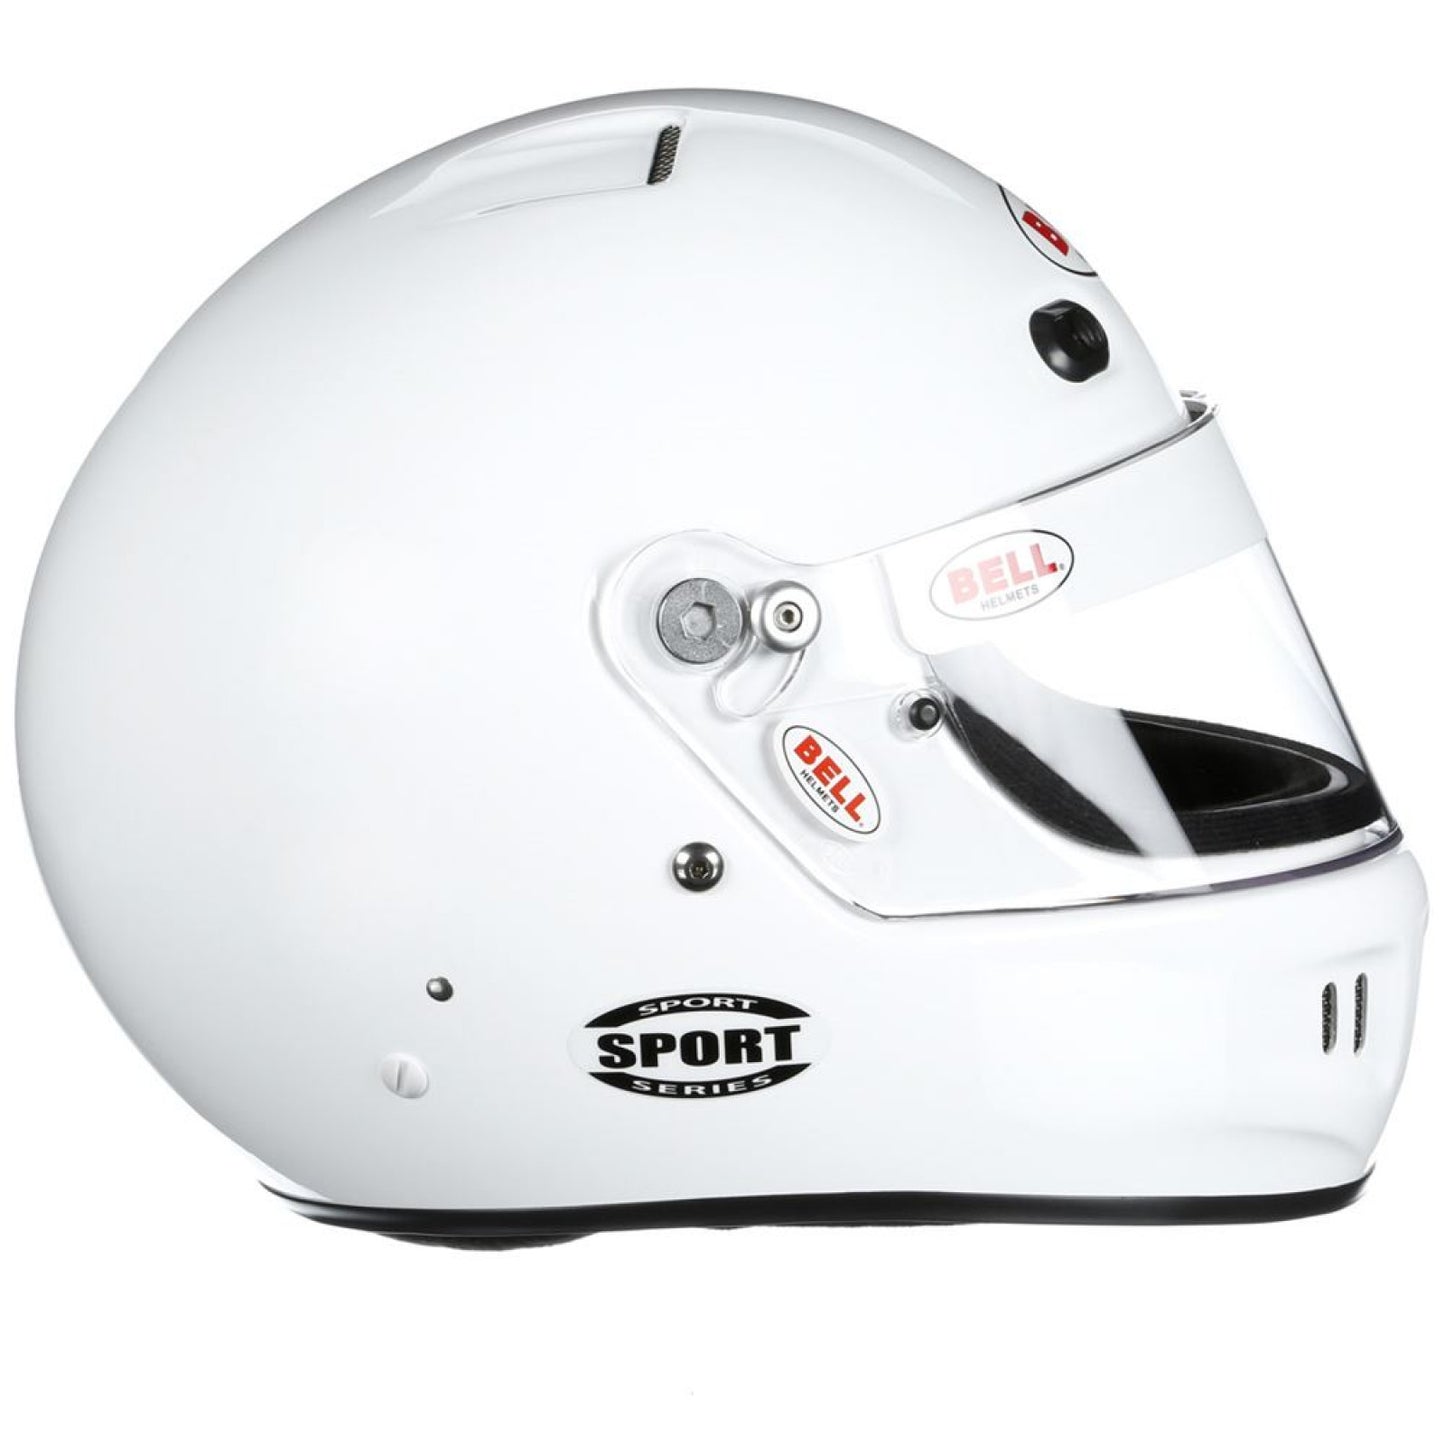 Bell K1 Sport White Helmet Medium (58-59)